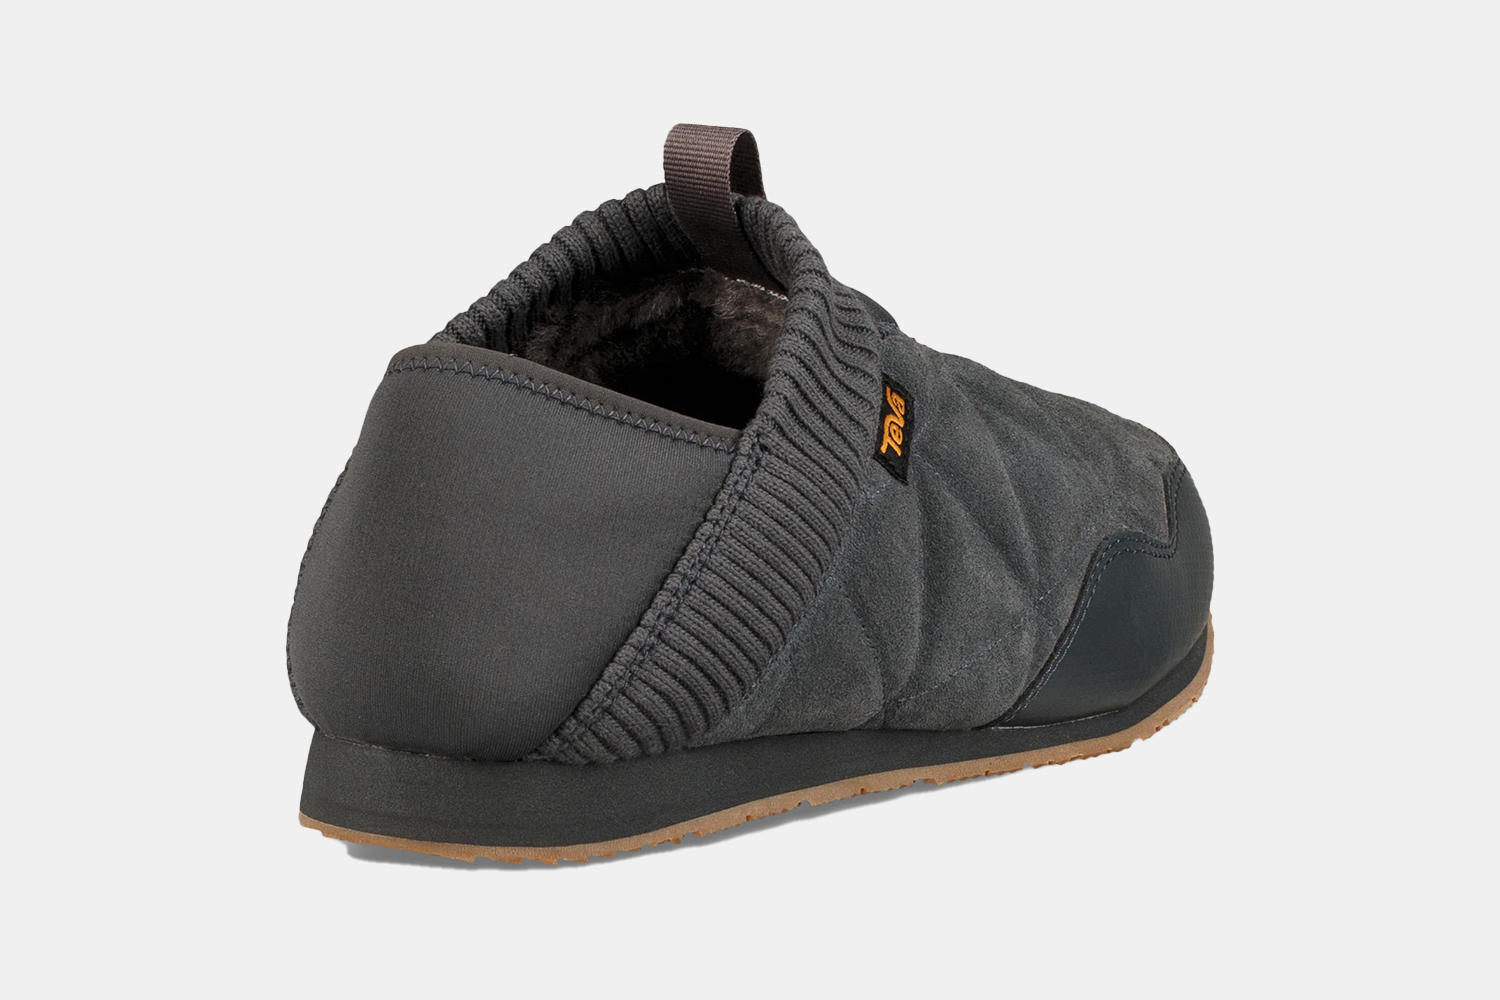 A sneaker shoe hybrid in grey